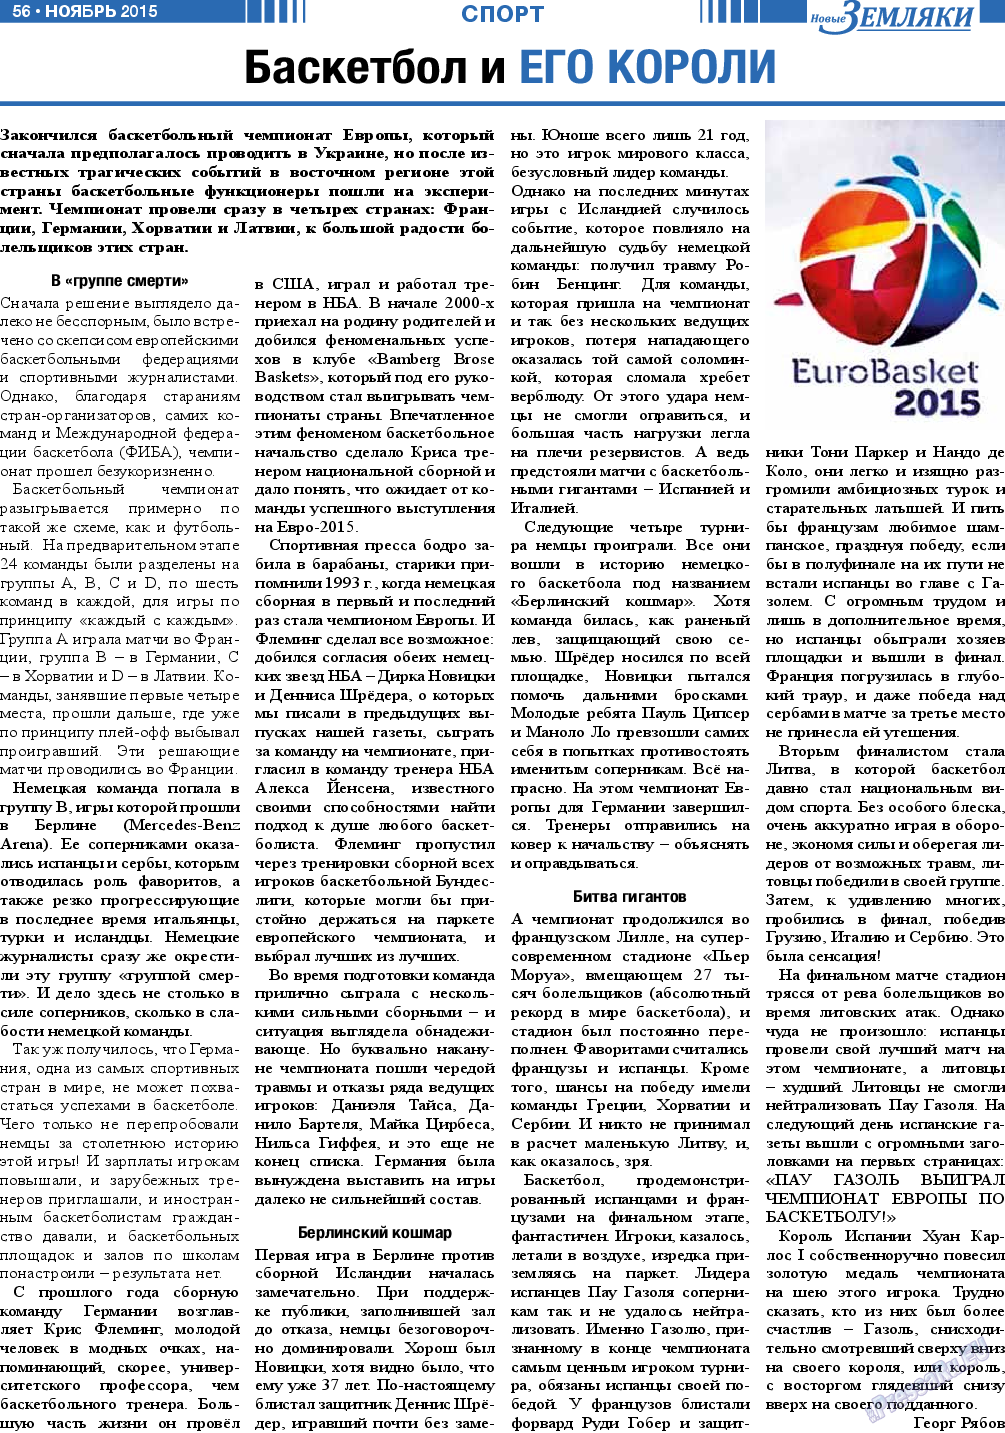 Новые Земляки (газета). 2015 год, номер 11, стр. 56